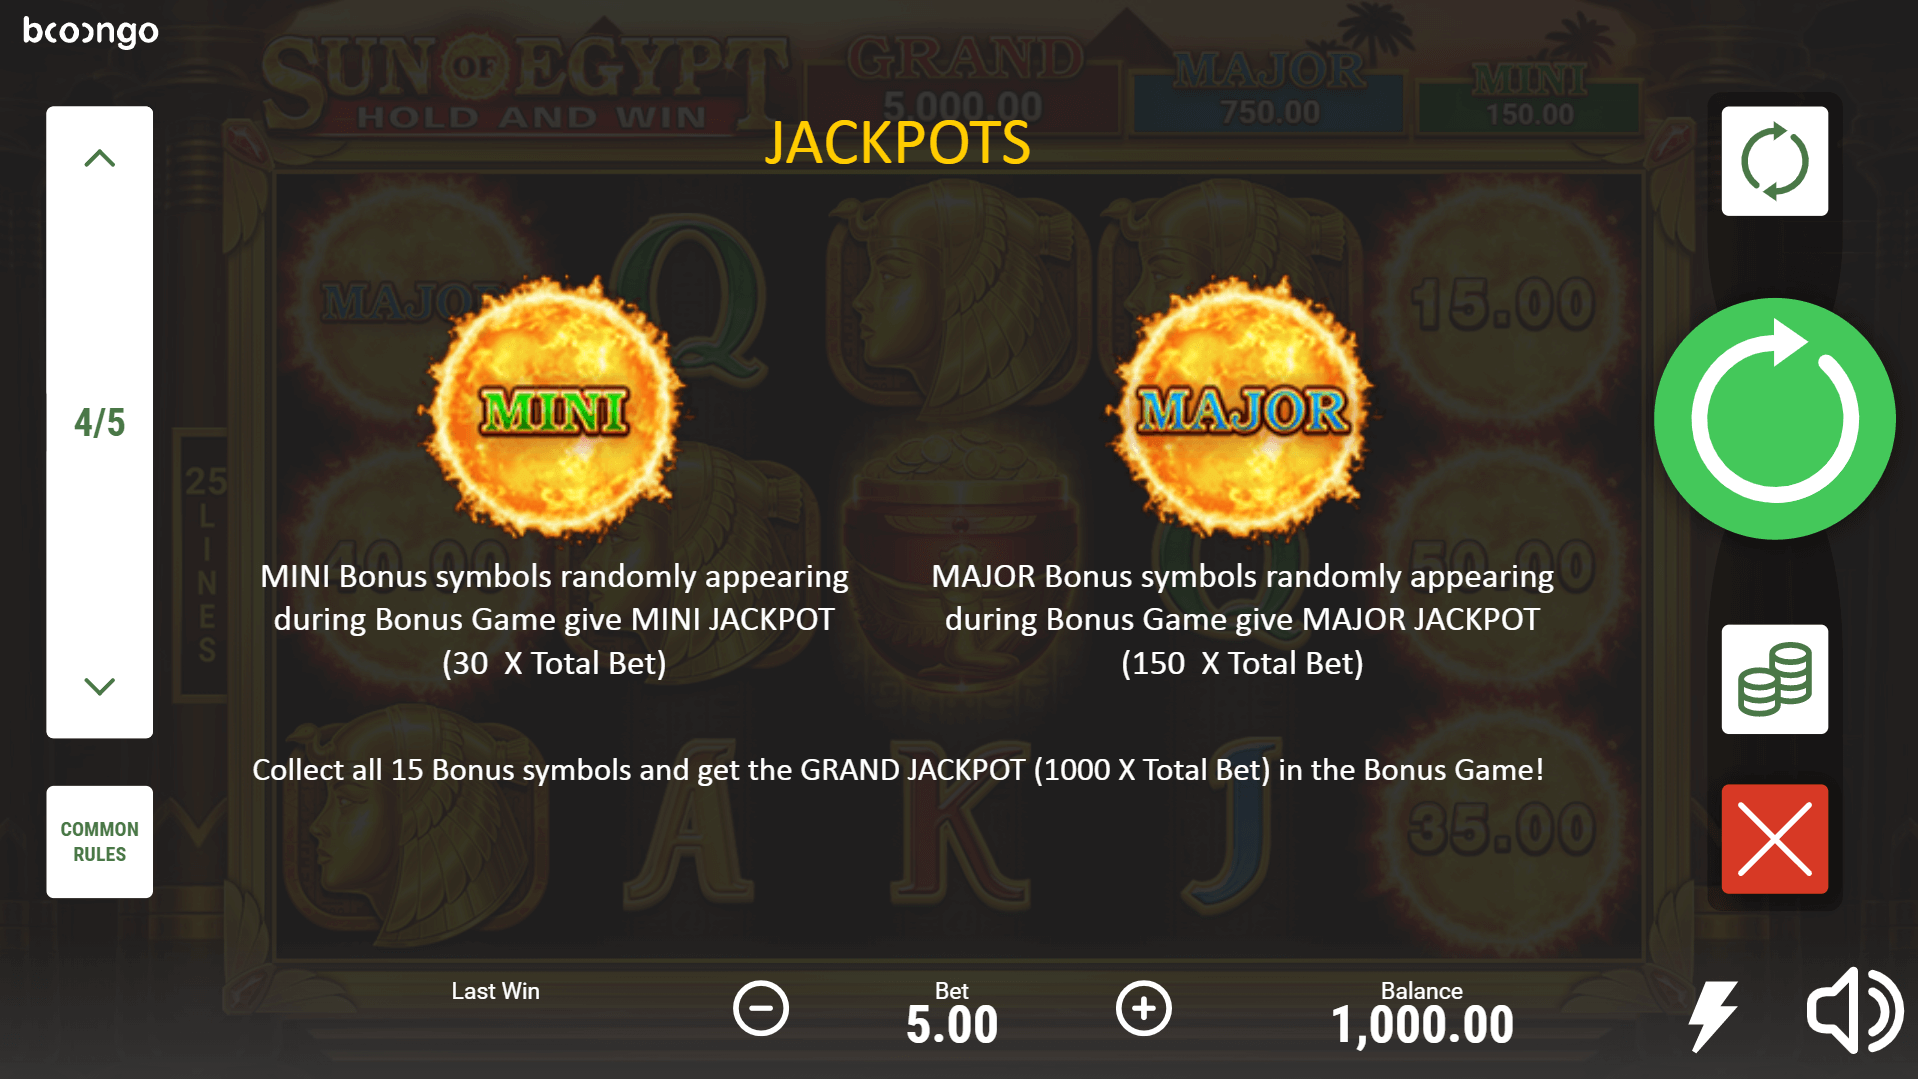 Sun of Egypt Slot Machine